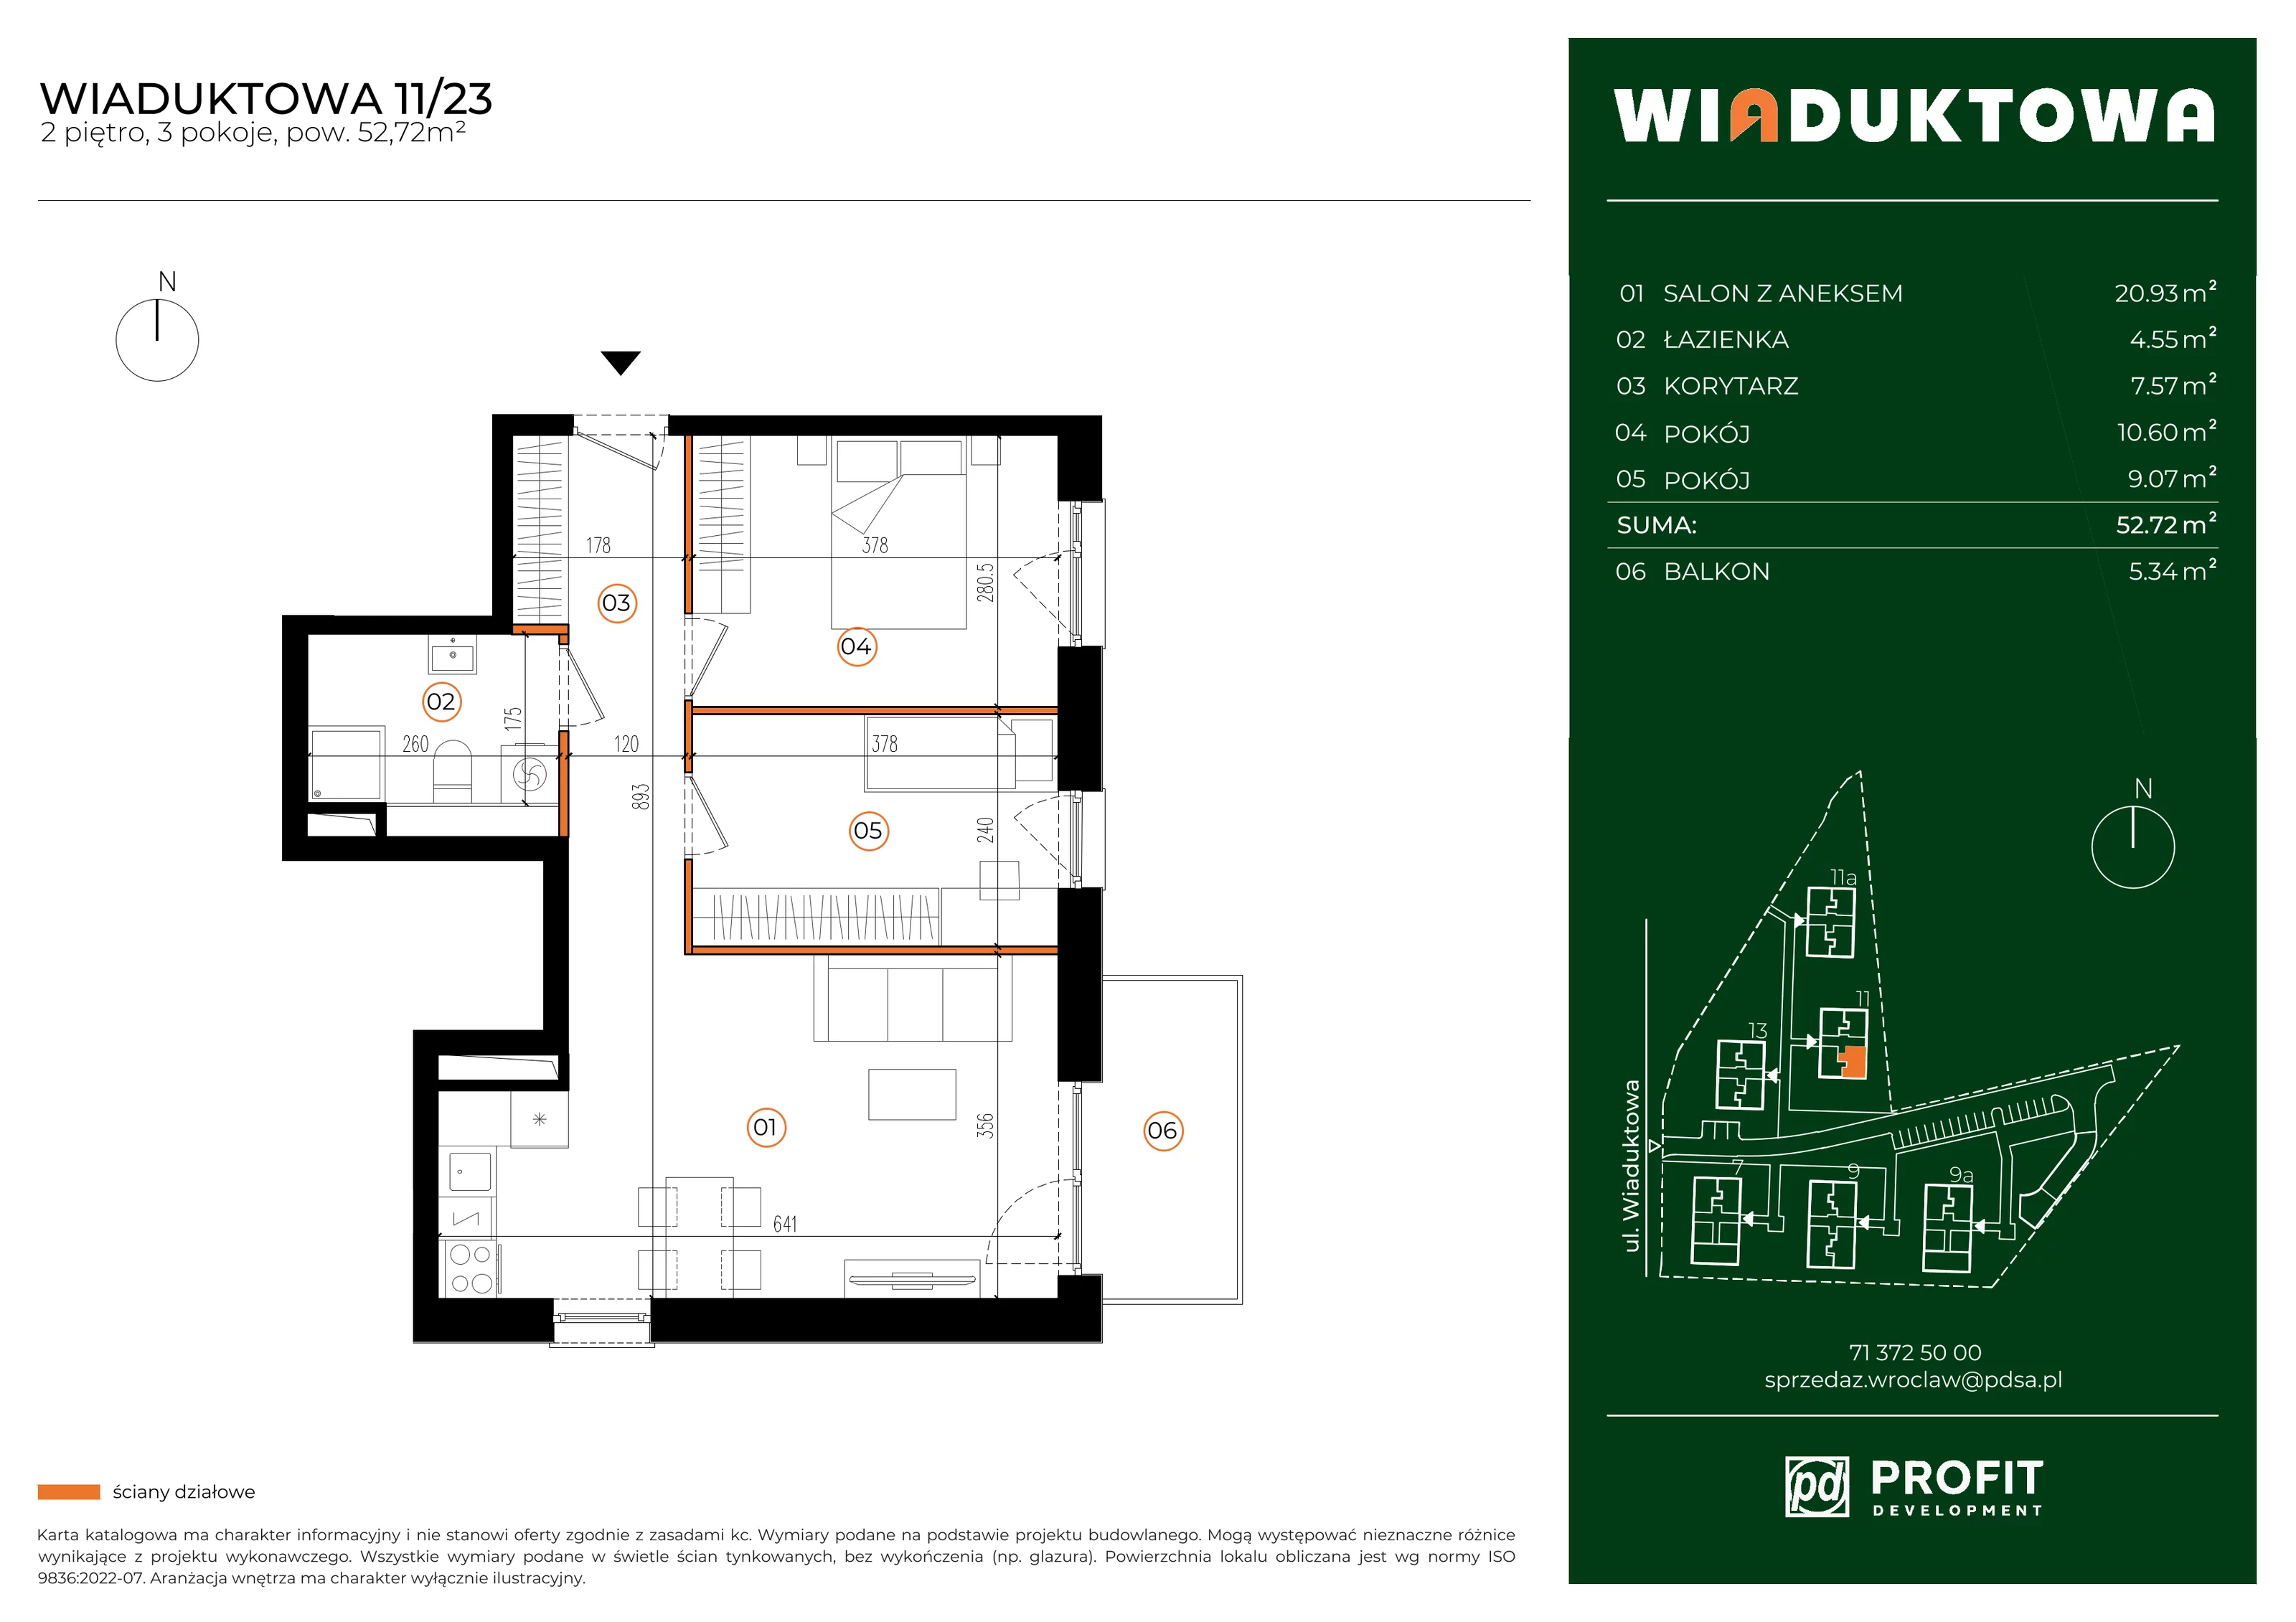 Mieszkanie 52,72 m², piętro 2, oferta nr WI/11/23, Wiaduktowa, Wrocław, Krzyki-Partynice, Krzyki, ul. Wiaduktowa